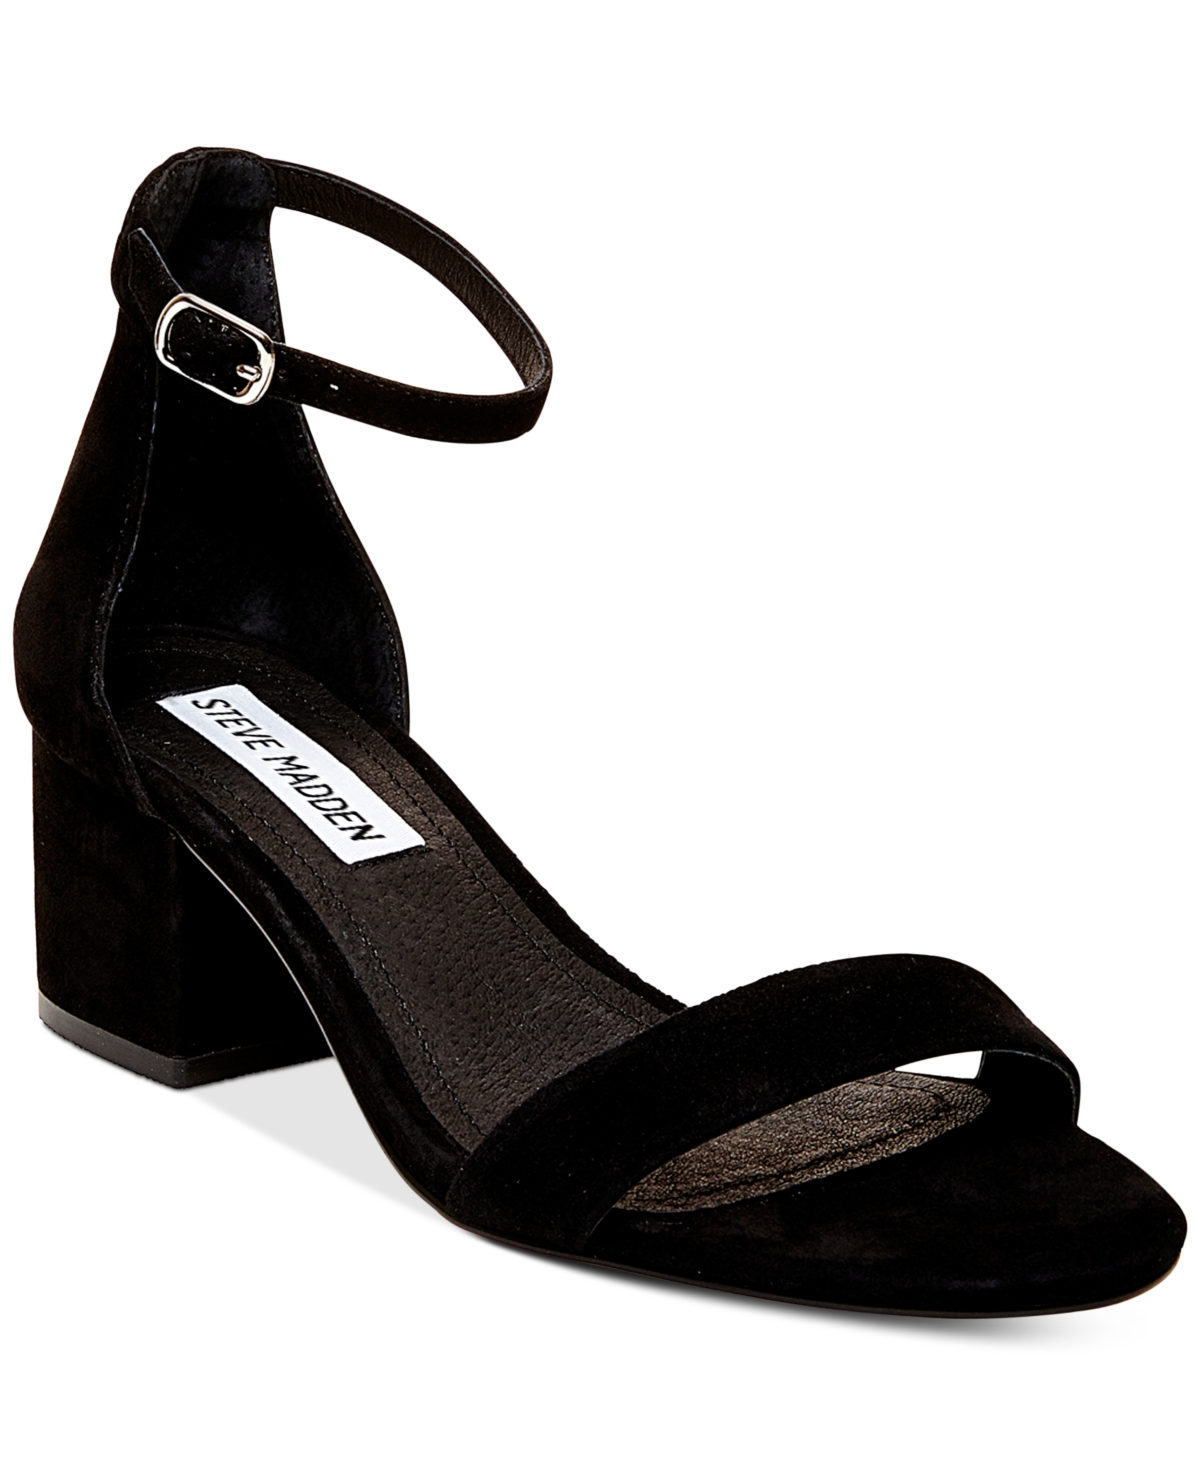 Women's Irenee Two-Piece Block-Heel Sandals - Black Suede